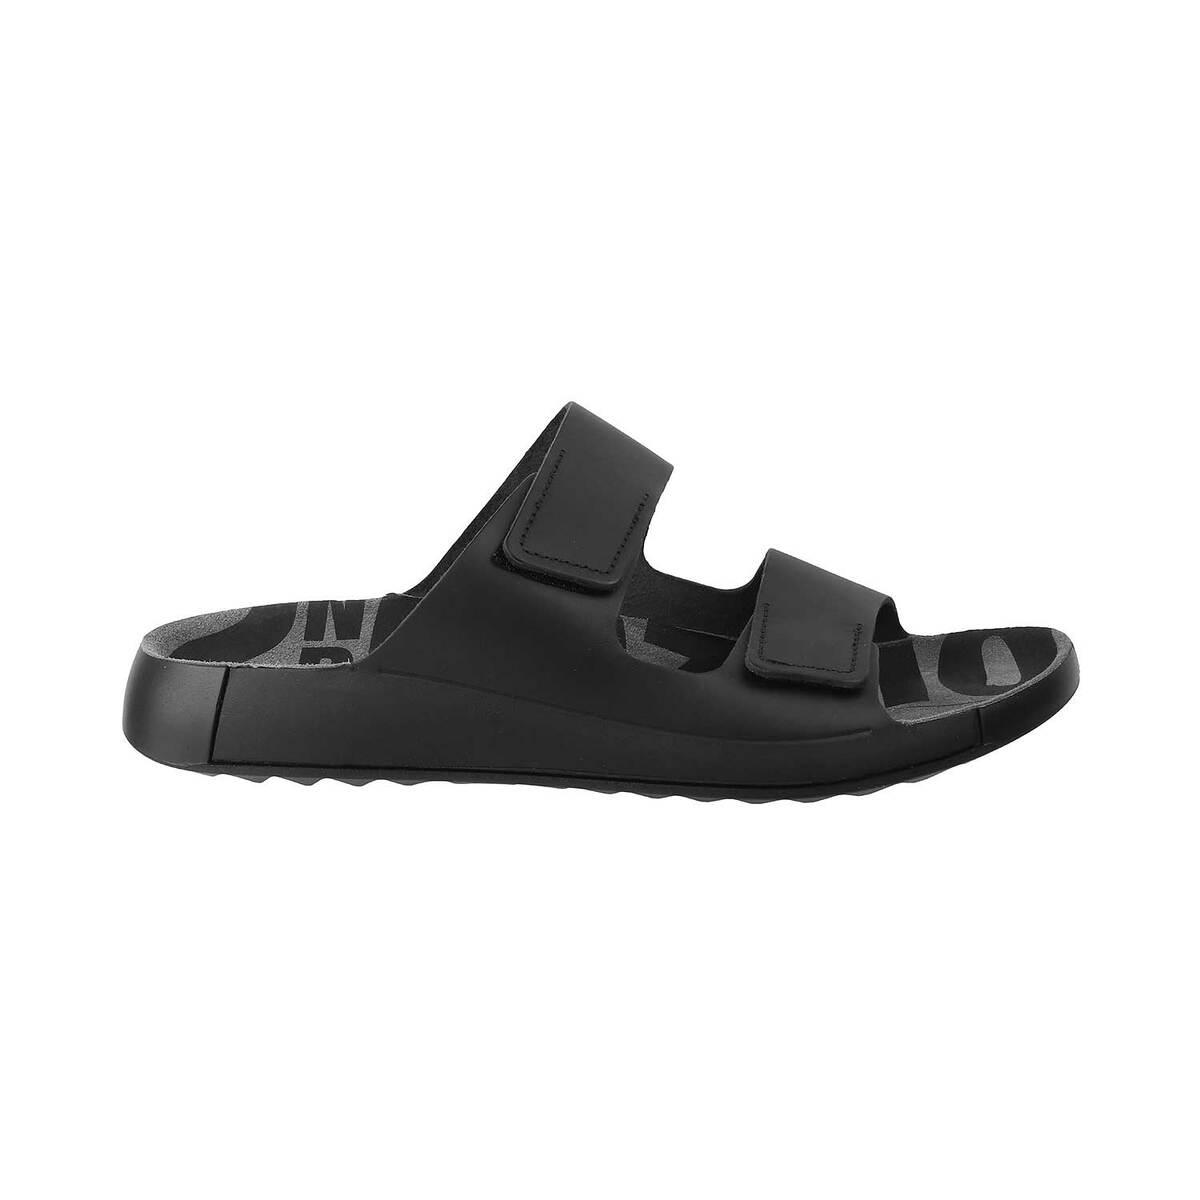 perspektiv Monopol område Buy ecco Black Casual Slippers Online | SKU:339-500904-11-43 - Metro Shoes